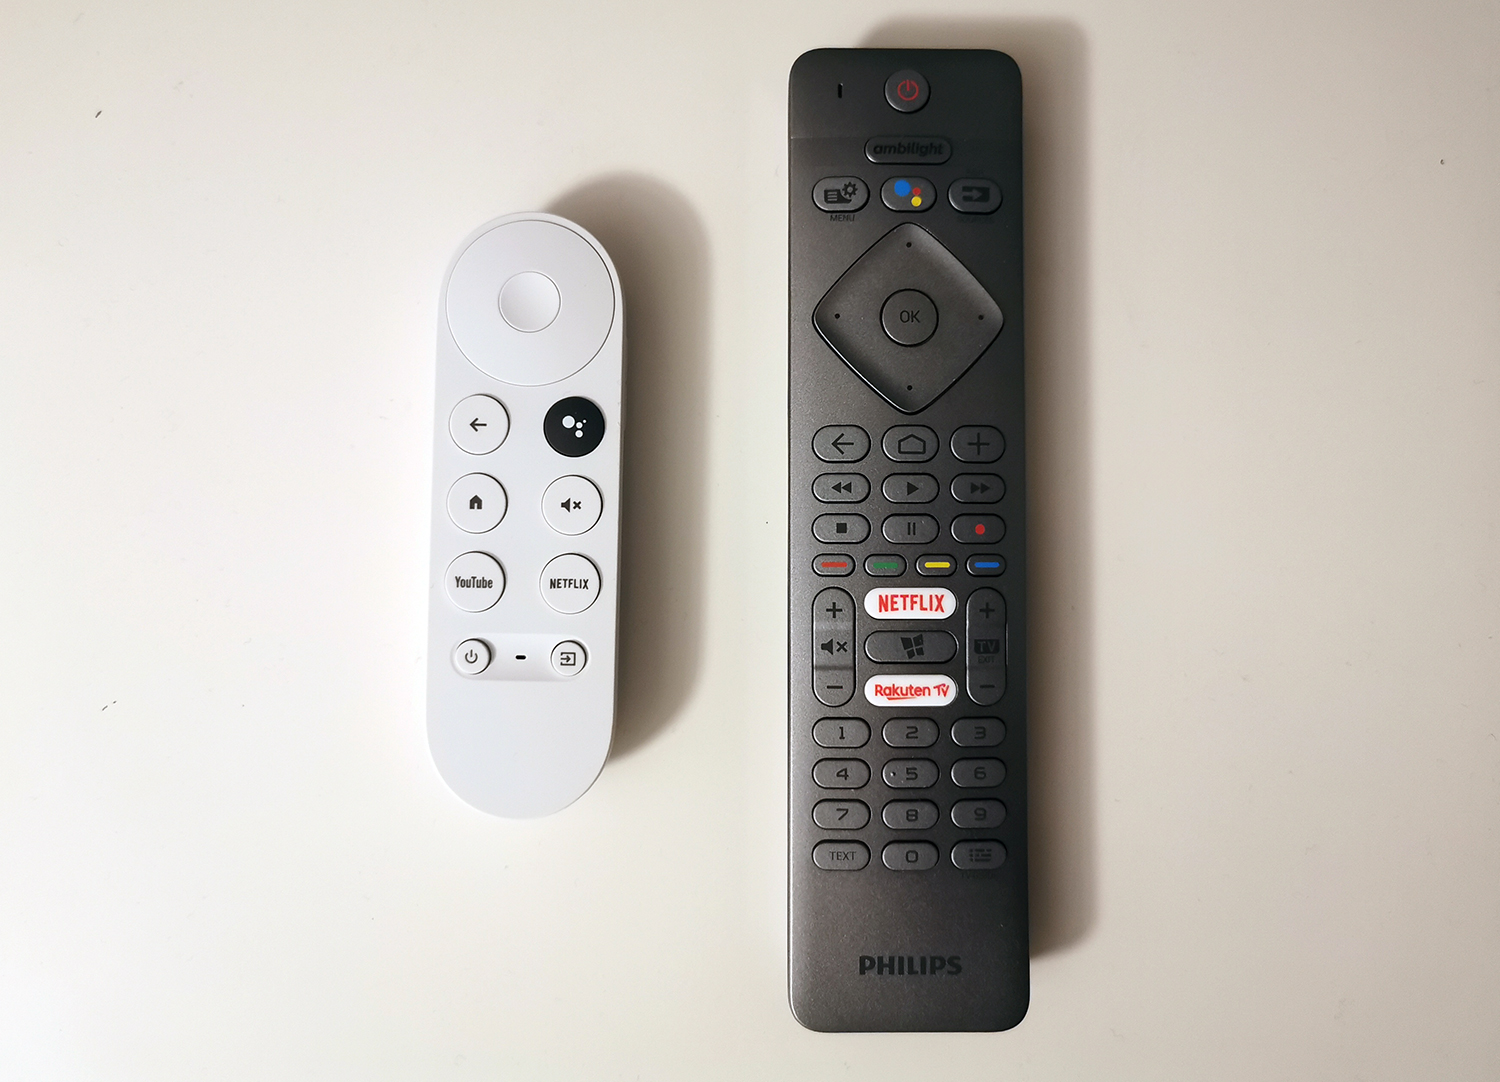 Google, Nuevo Chromecast con control remoto es parte de Google TV, la  nueva estrategia de Google para streaming